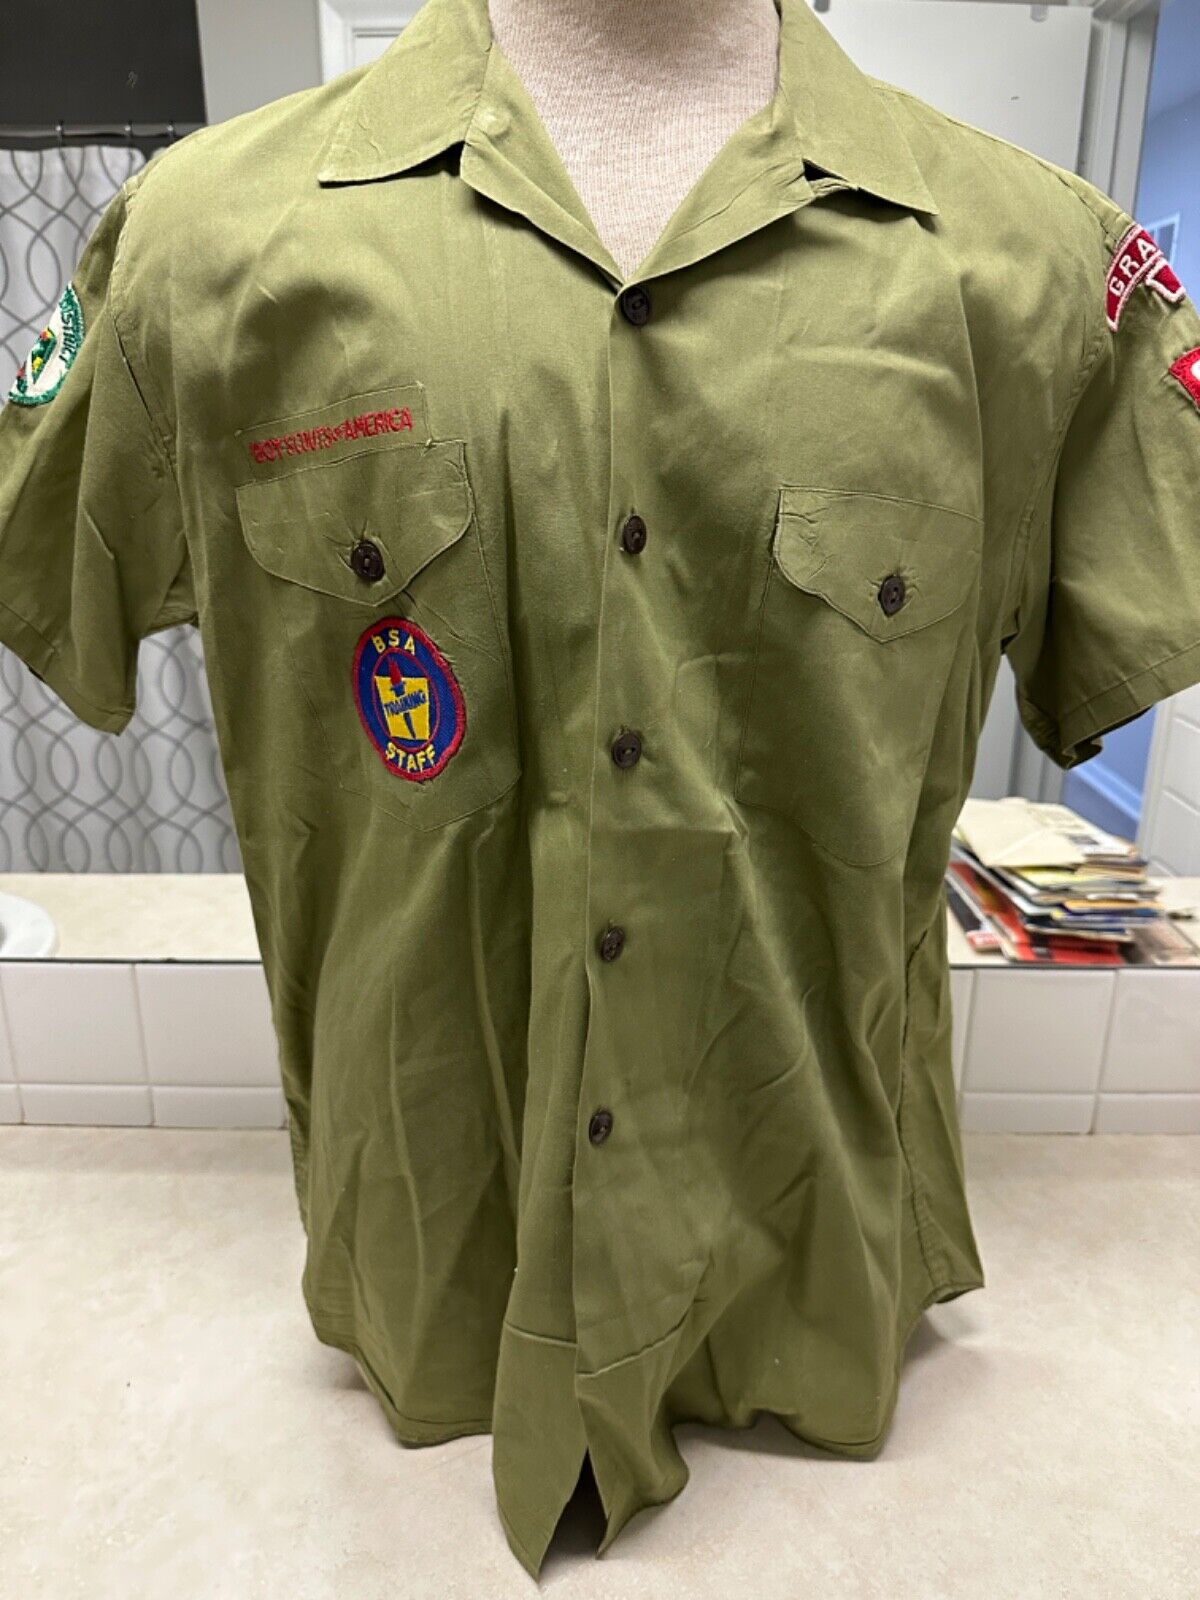 Vintage Official Boy Scout Uniform Shirt - Grandview, Missouri